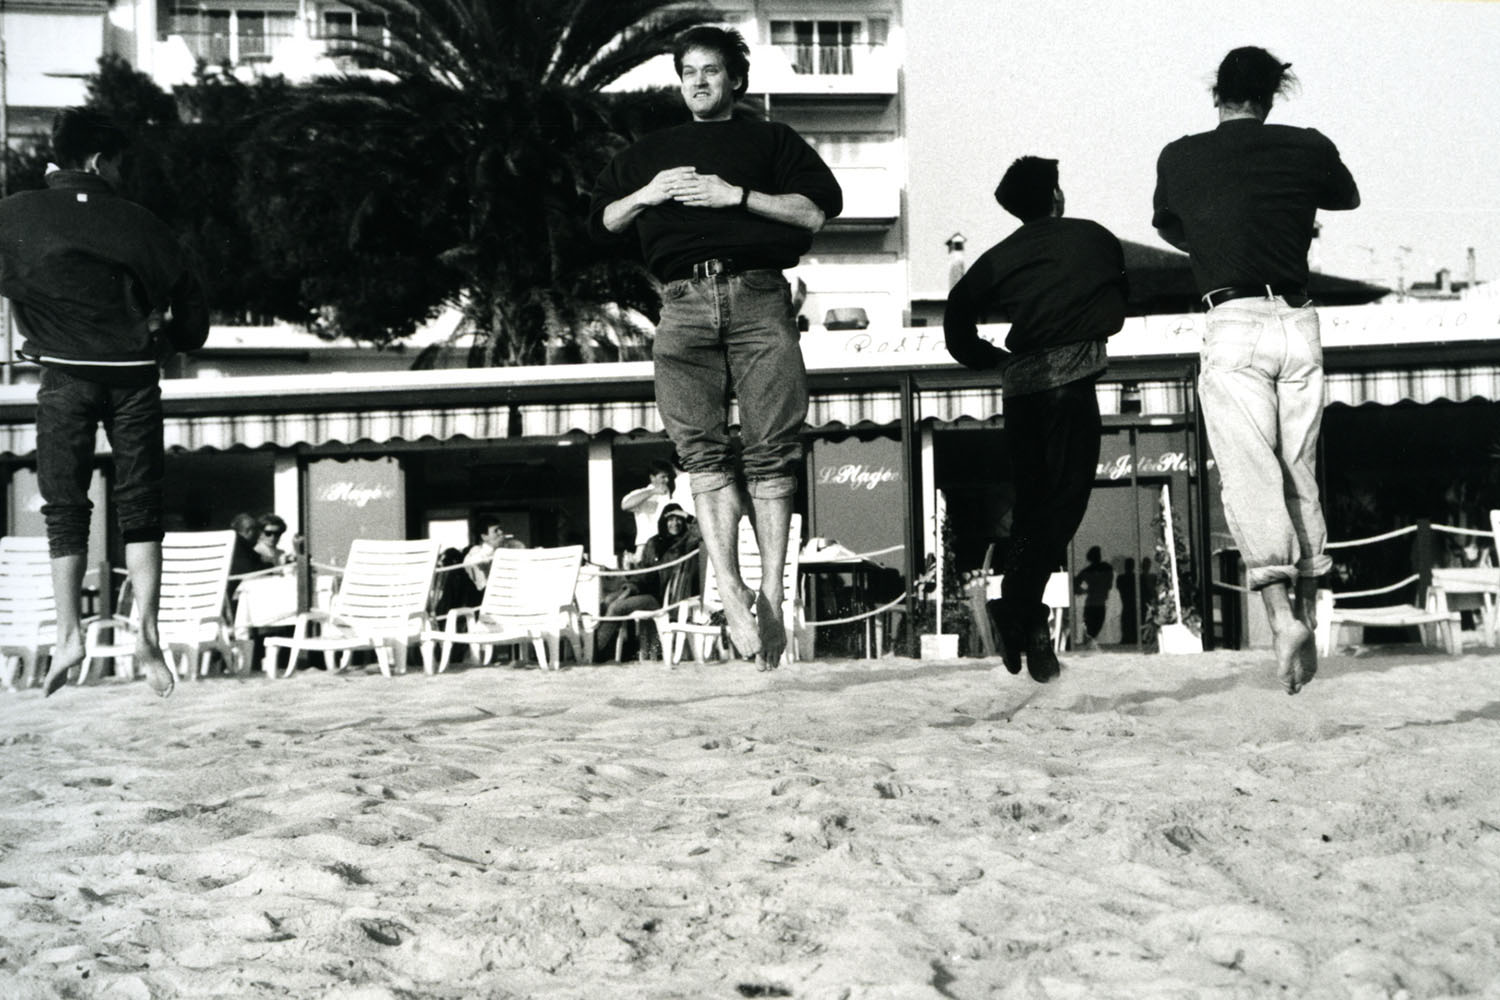 Dieses Foto wurde mit meine alter Minolta, Analog Fotokamera aufgenommen. Mit dem Truppe von Staatstheater Darmstadt haben wir eine Tourneé nach Cannes gehabt und am einen Tag haben wir blödsinn getanzt am Strand. Es war in Frühling 1994 aufgenommen.